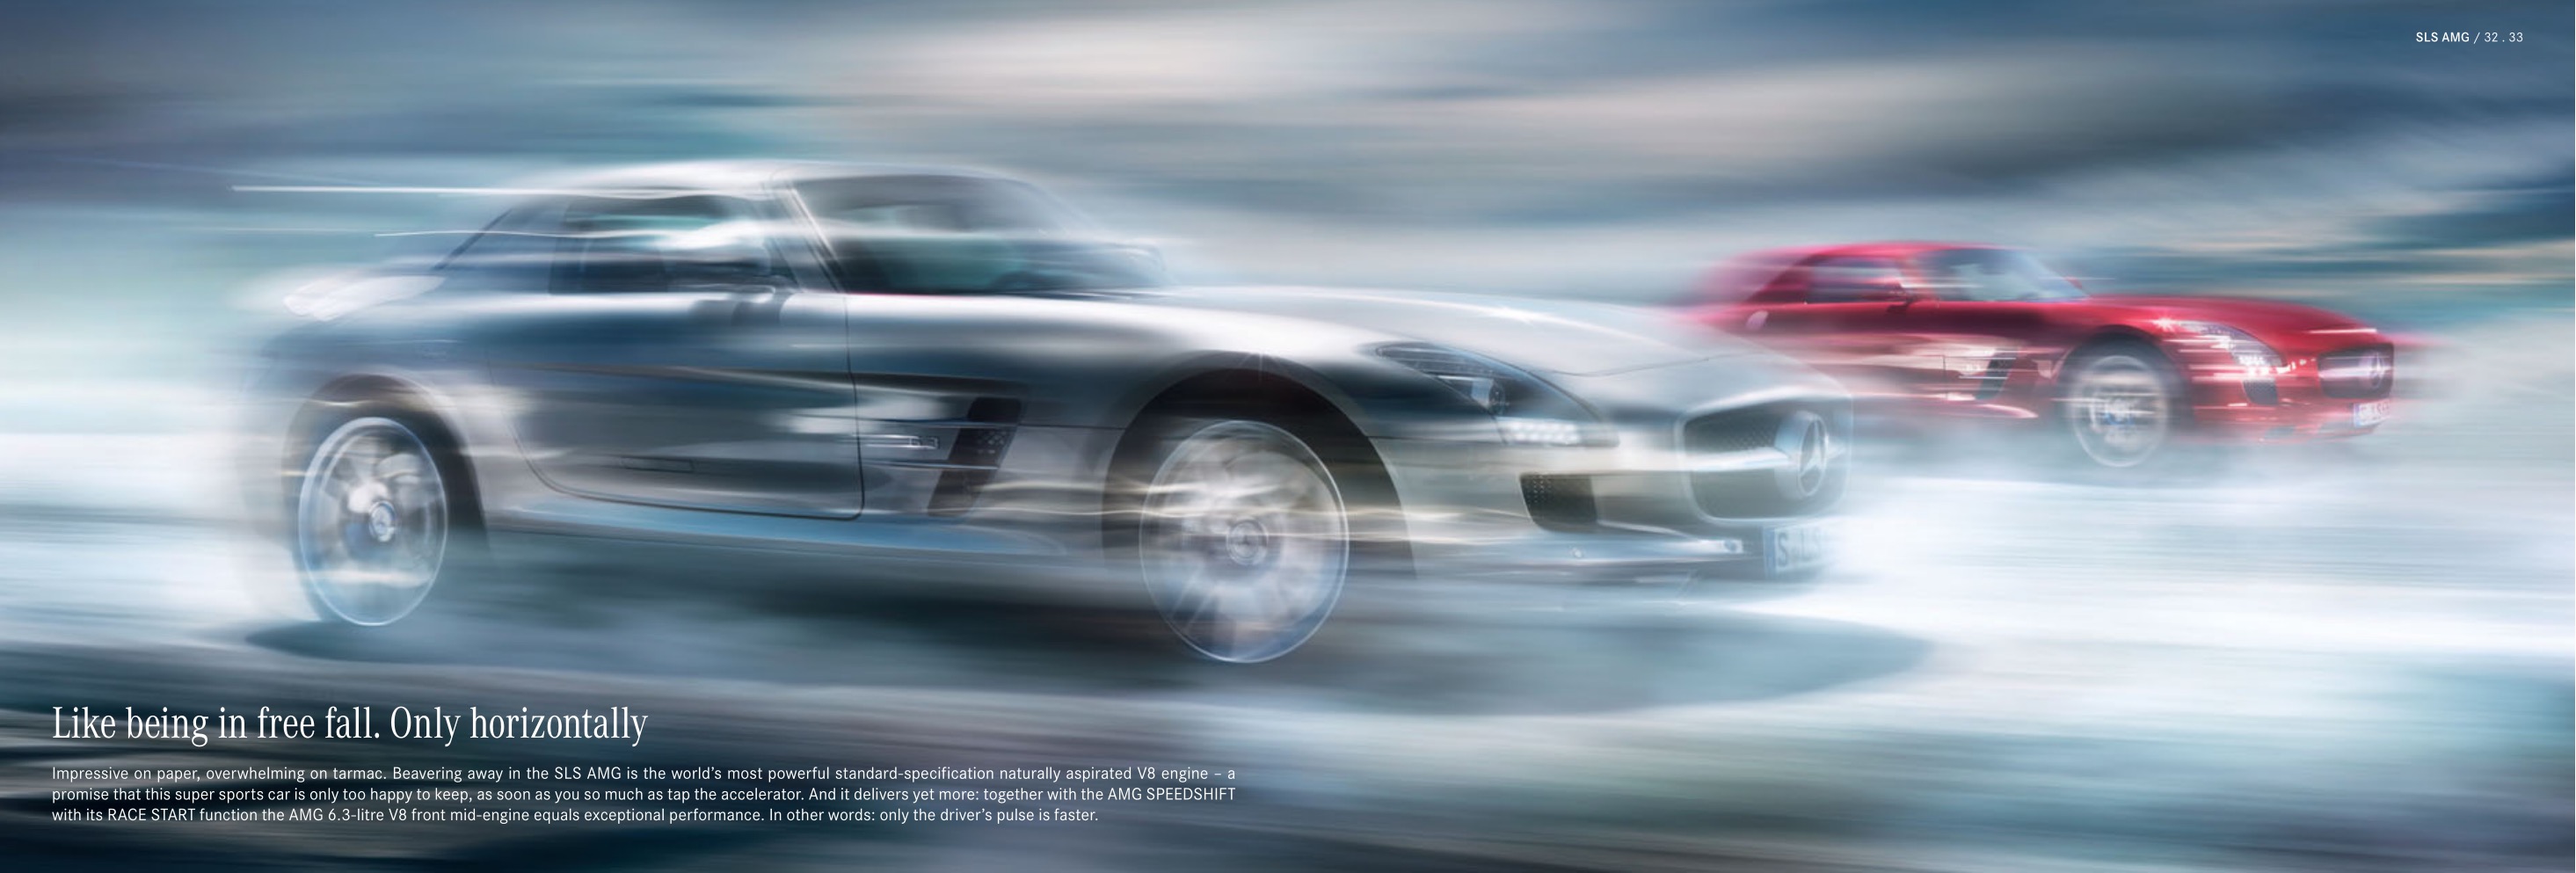 2013 Mercedes-Benz SLS Class Brochure Page 31